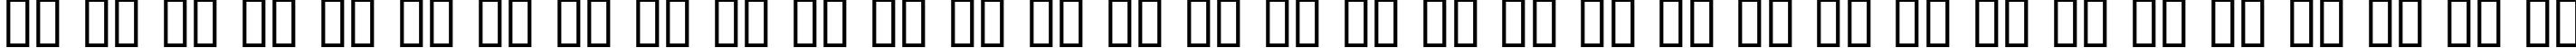 Пример написания русского алфавита шрифтом Gabrielle